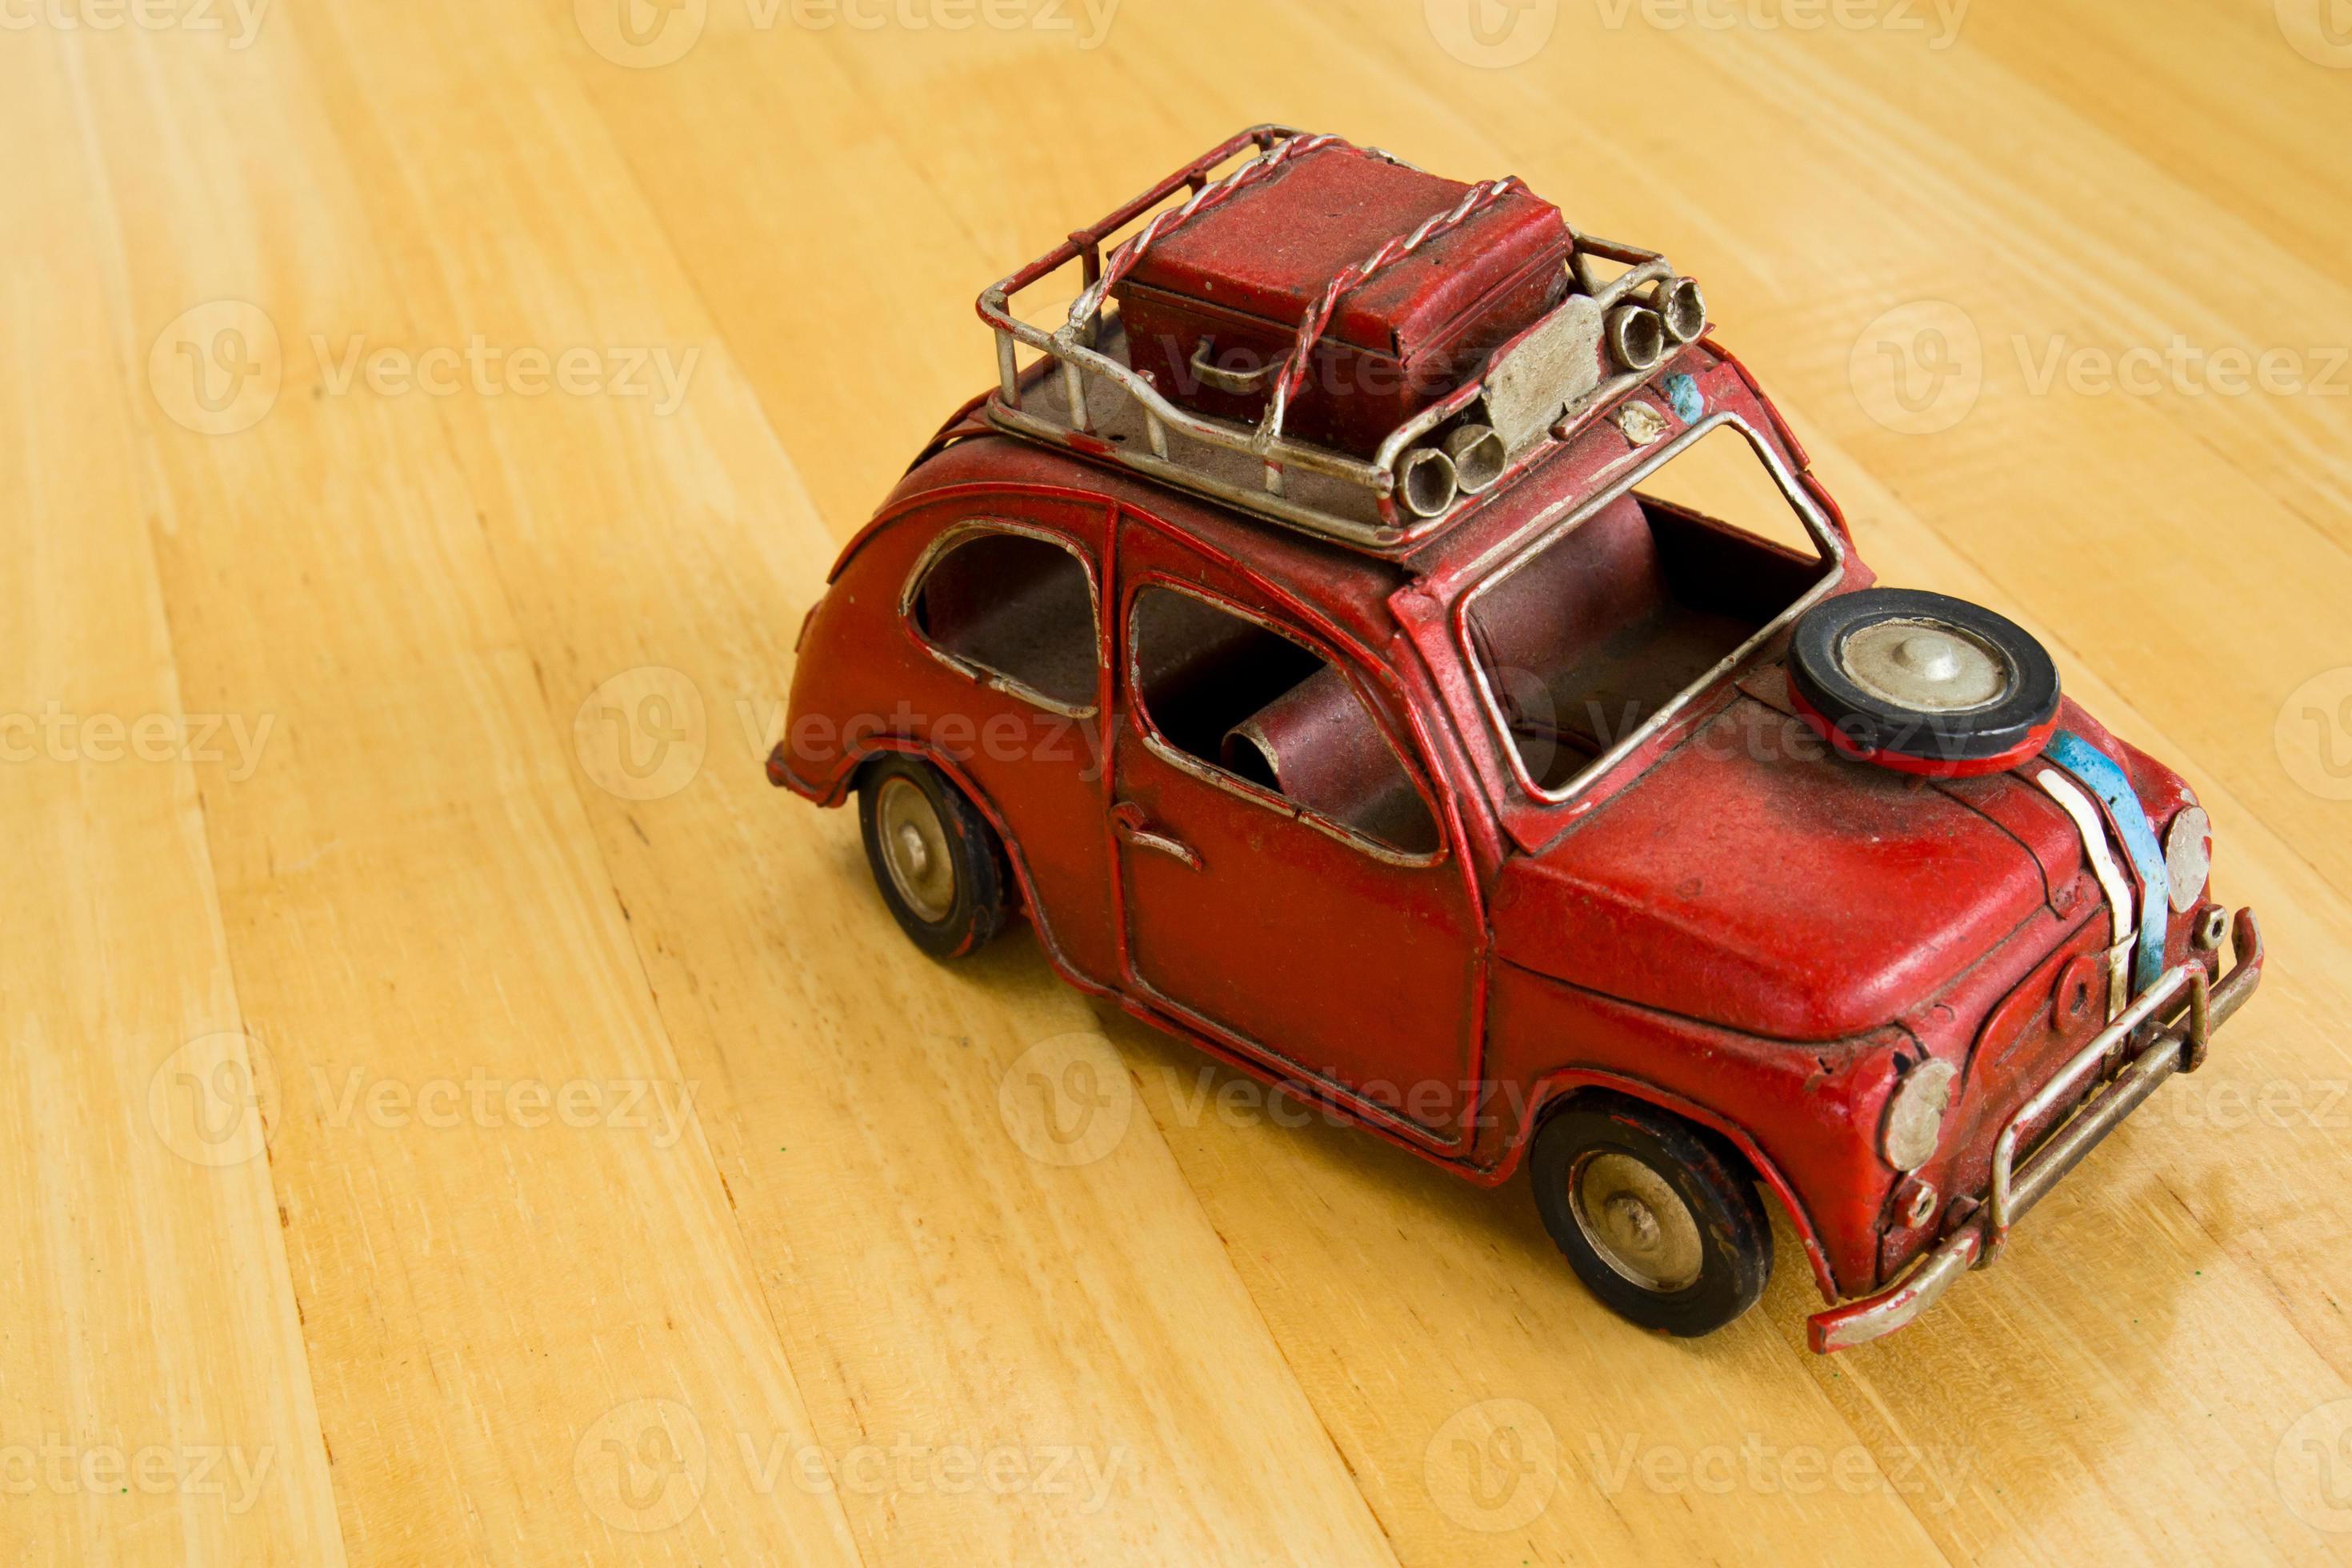 Afrekenen Strippen Panorama oude rode speelgoedauto op een houten vloer. 774092 stockfoto bij Vecteezy